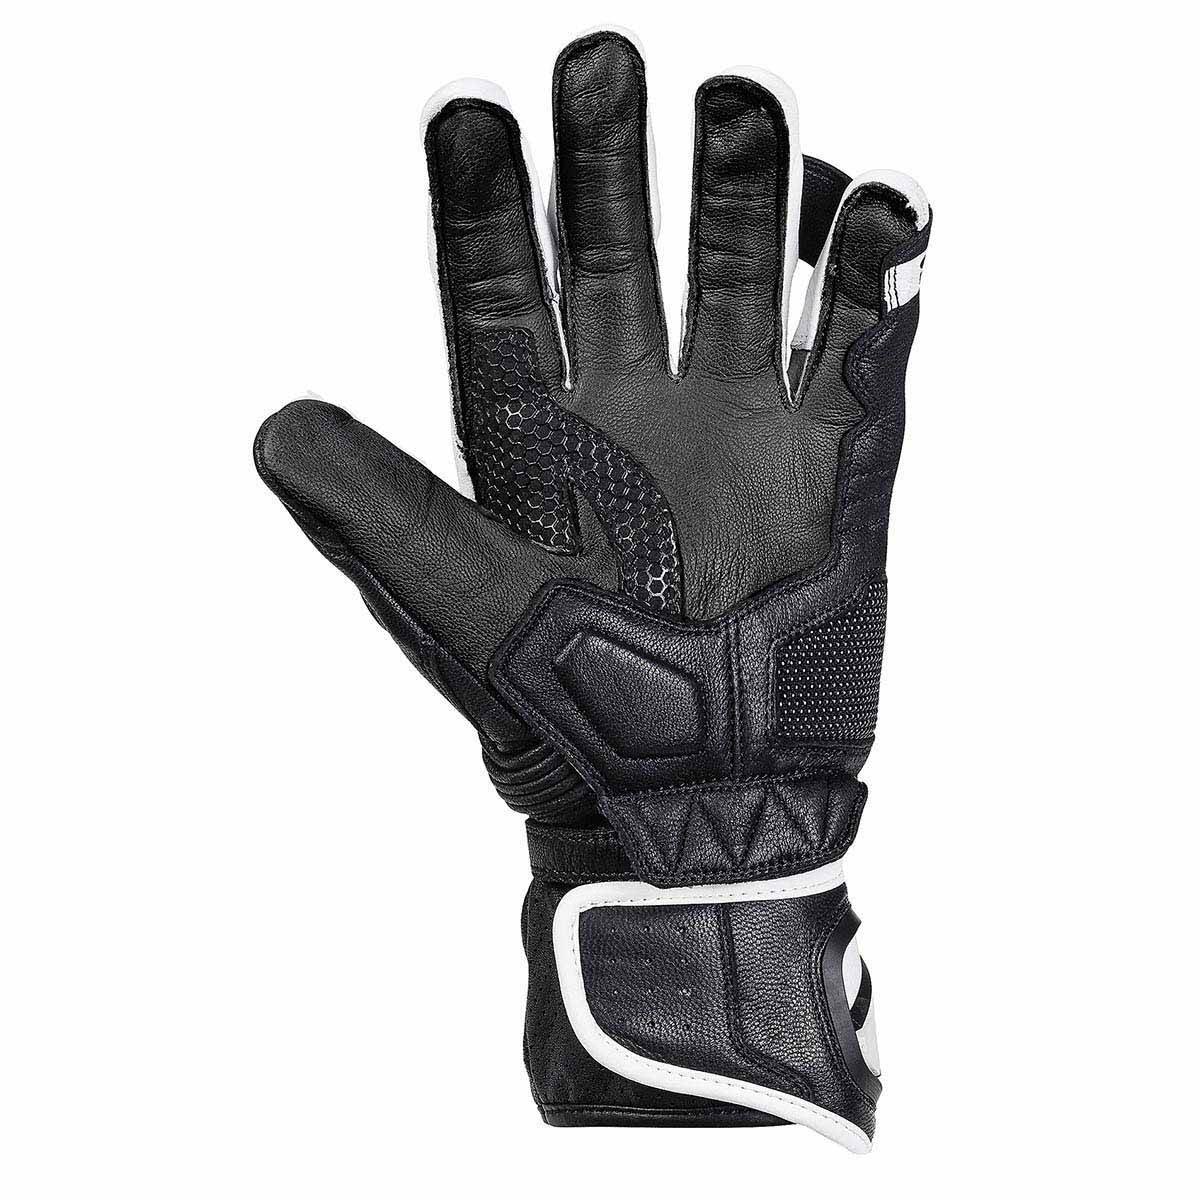 Športne motoristične rokavice iXS RS-200 2.0, črne/bele